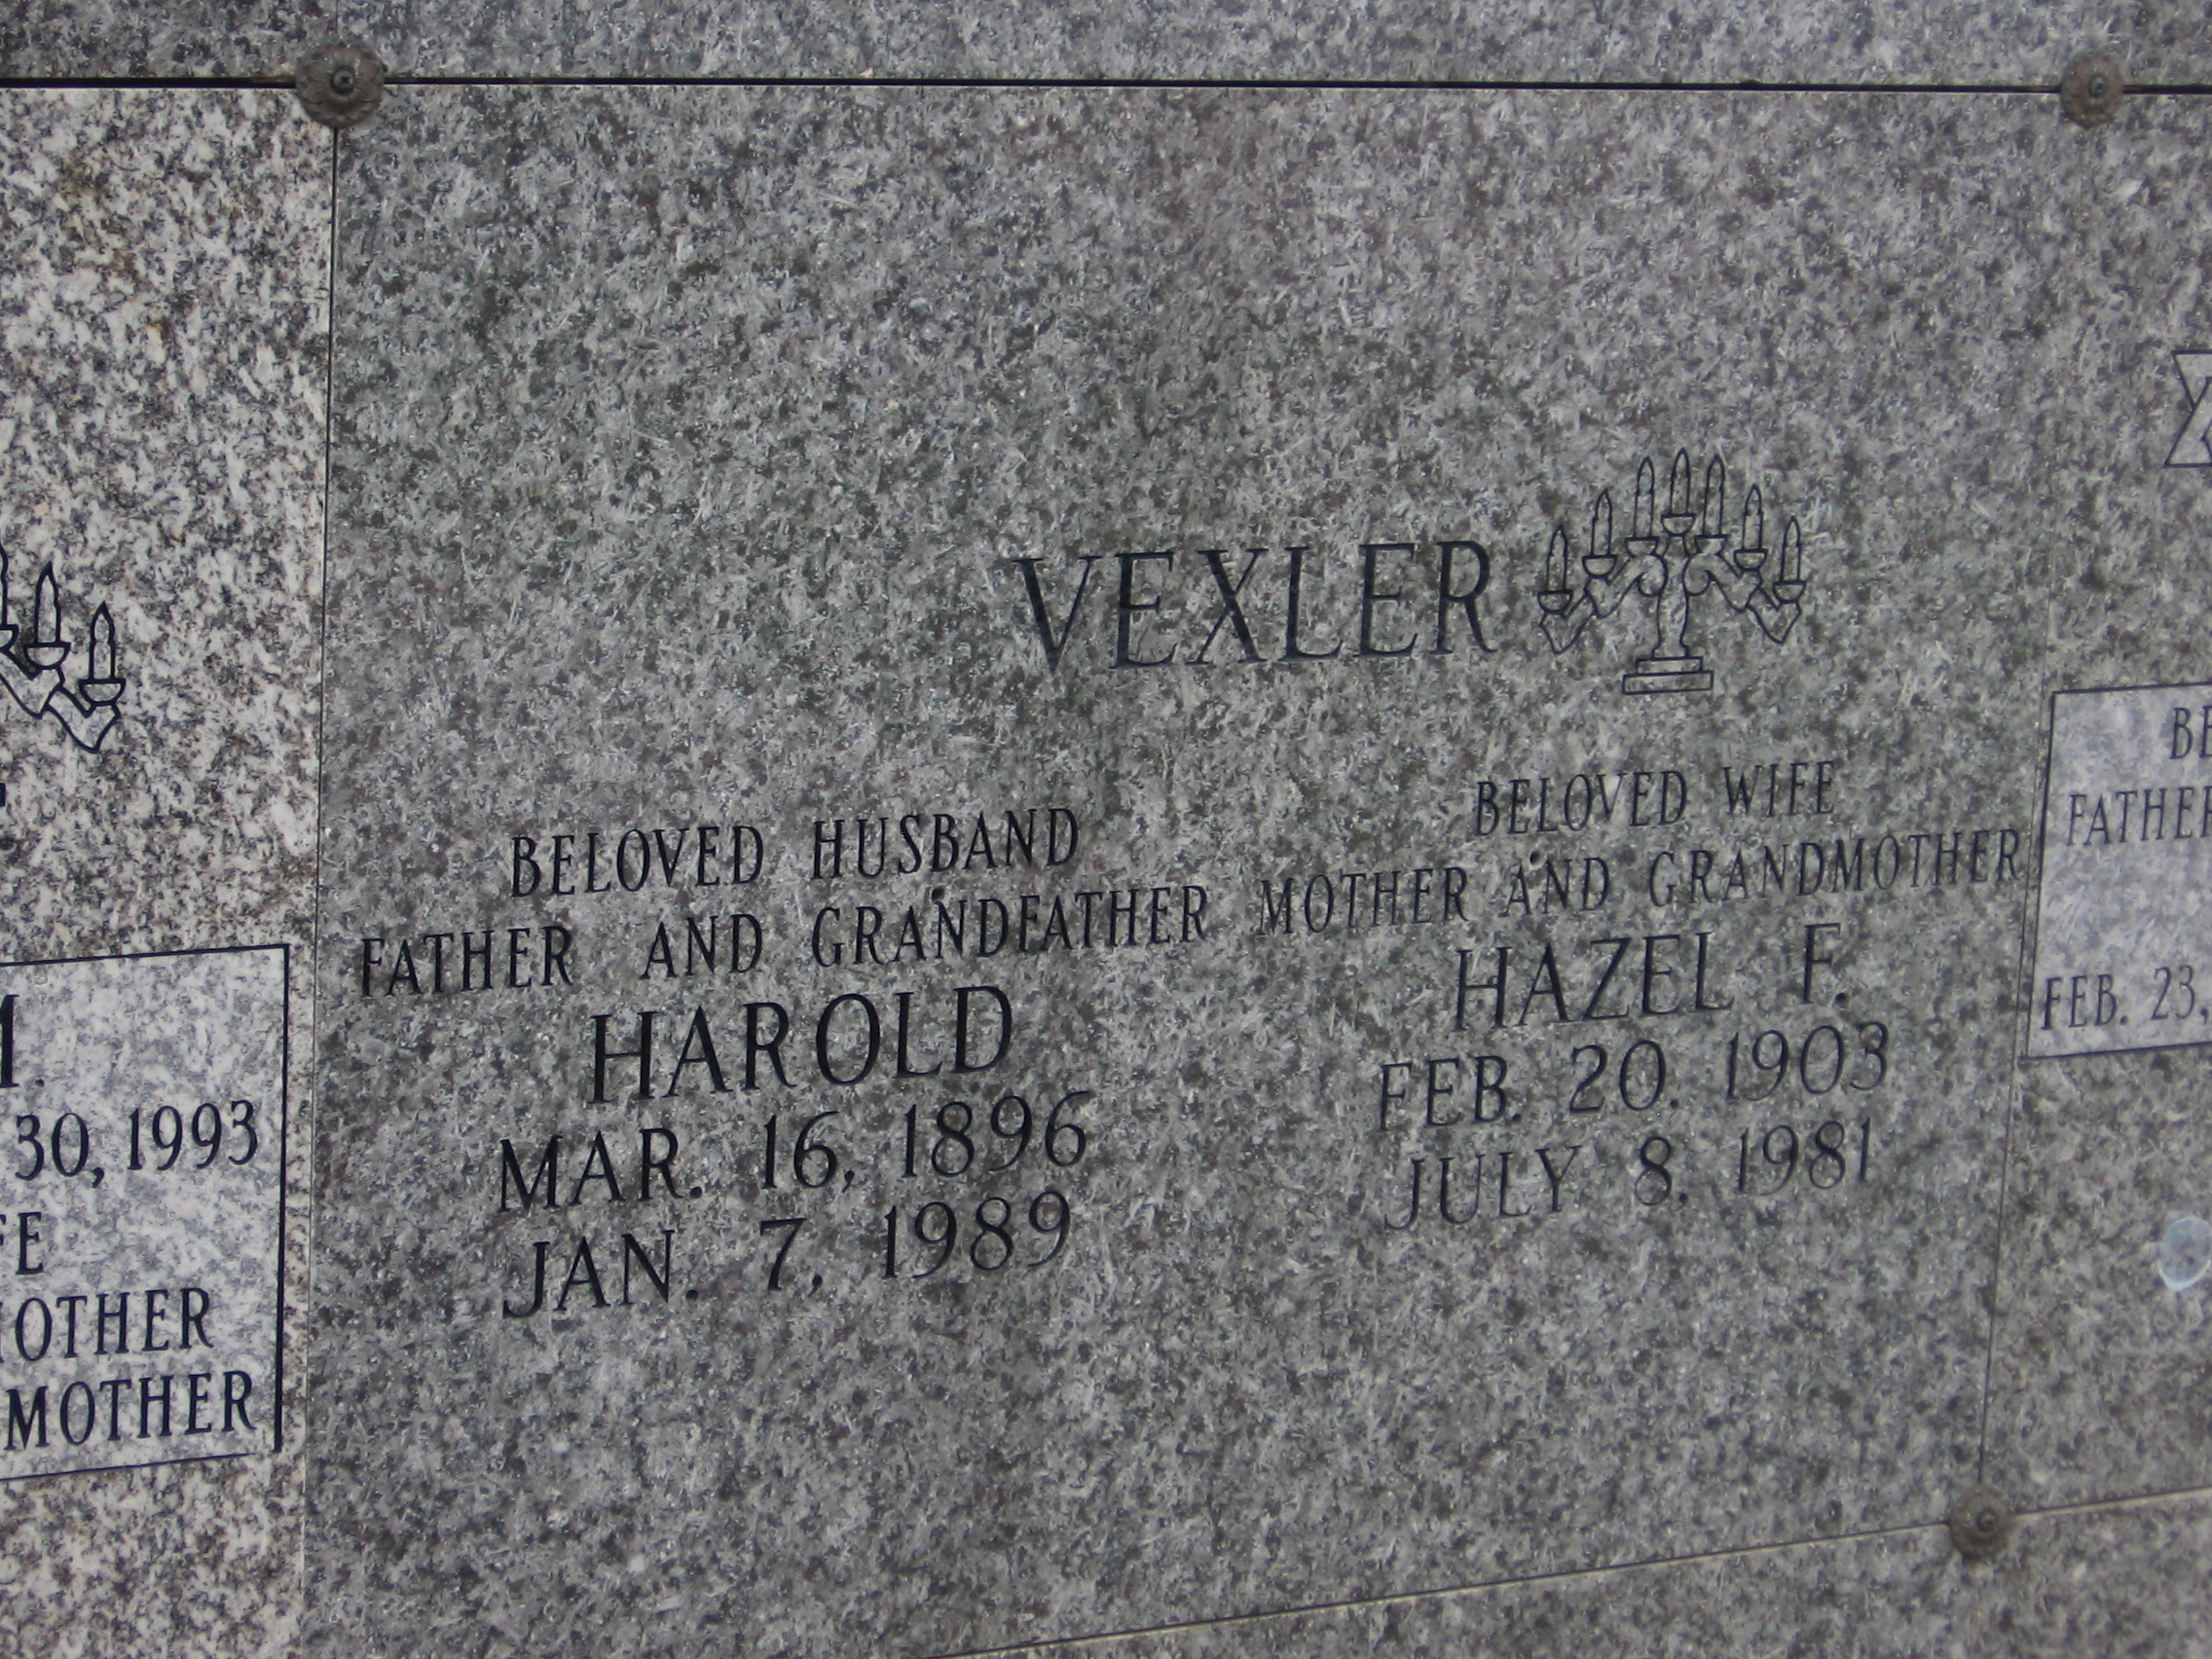 Harold Vexler